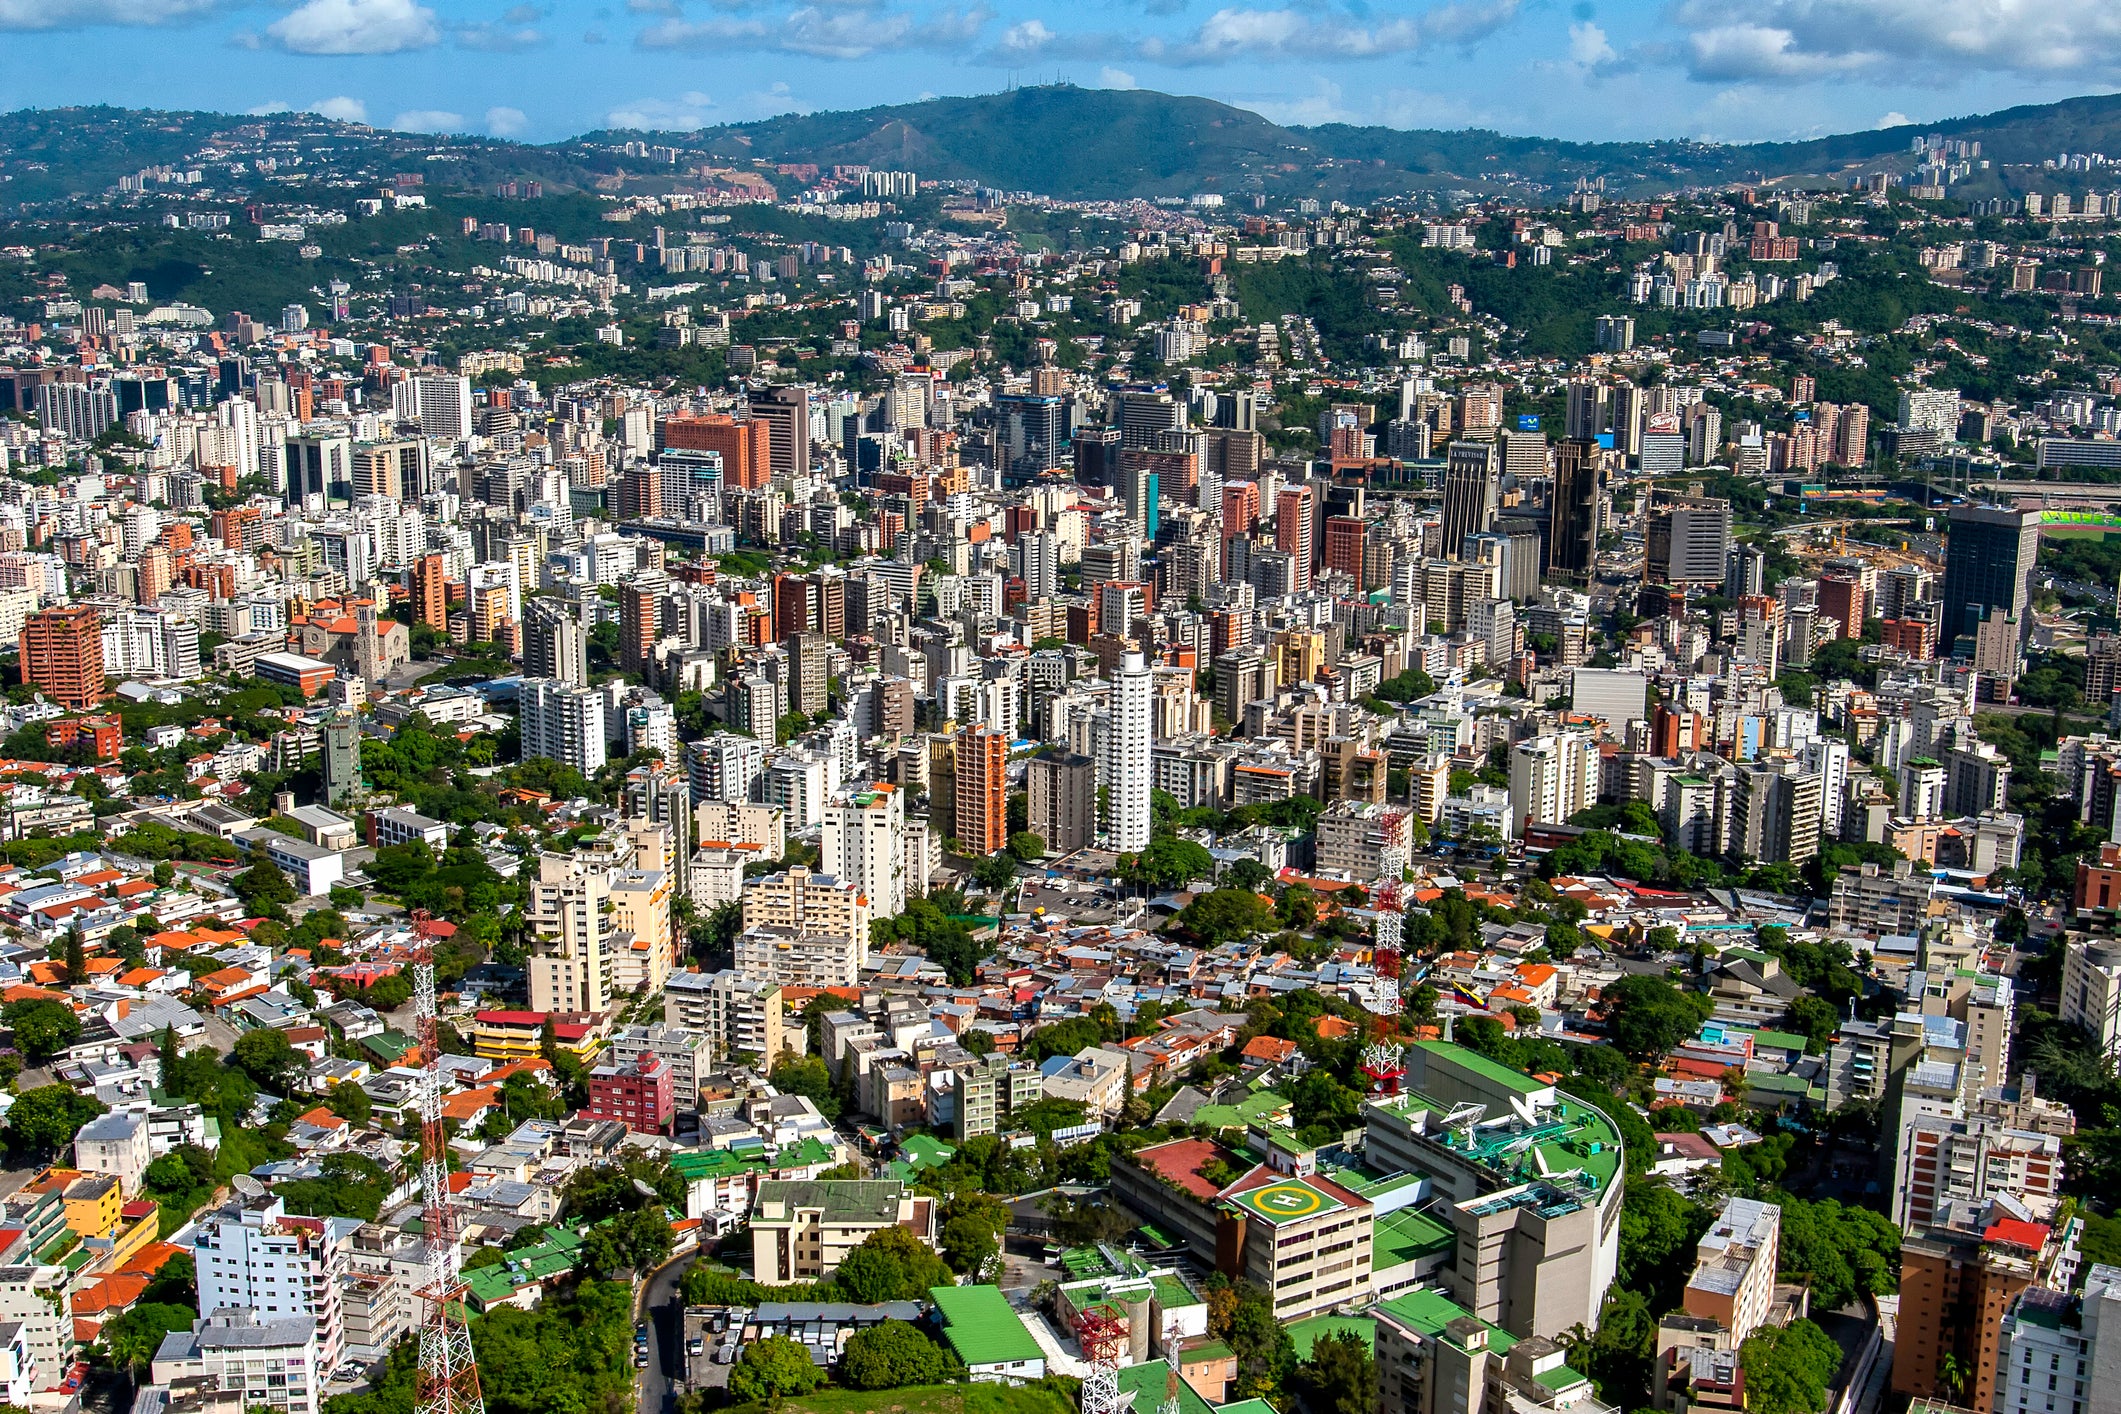 Caracas in Venezuela was given a 100 risk score